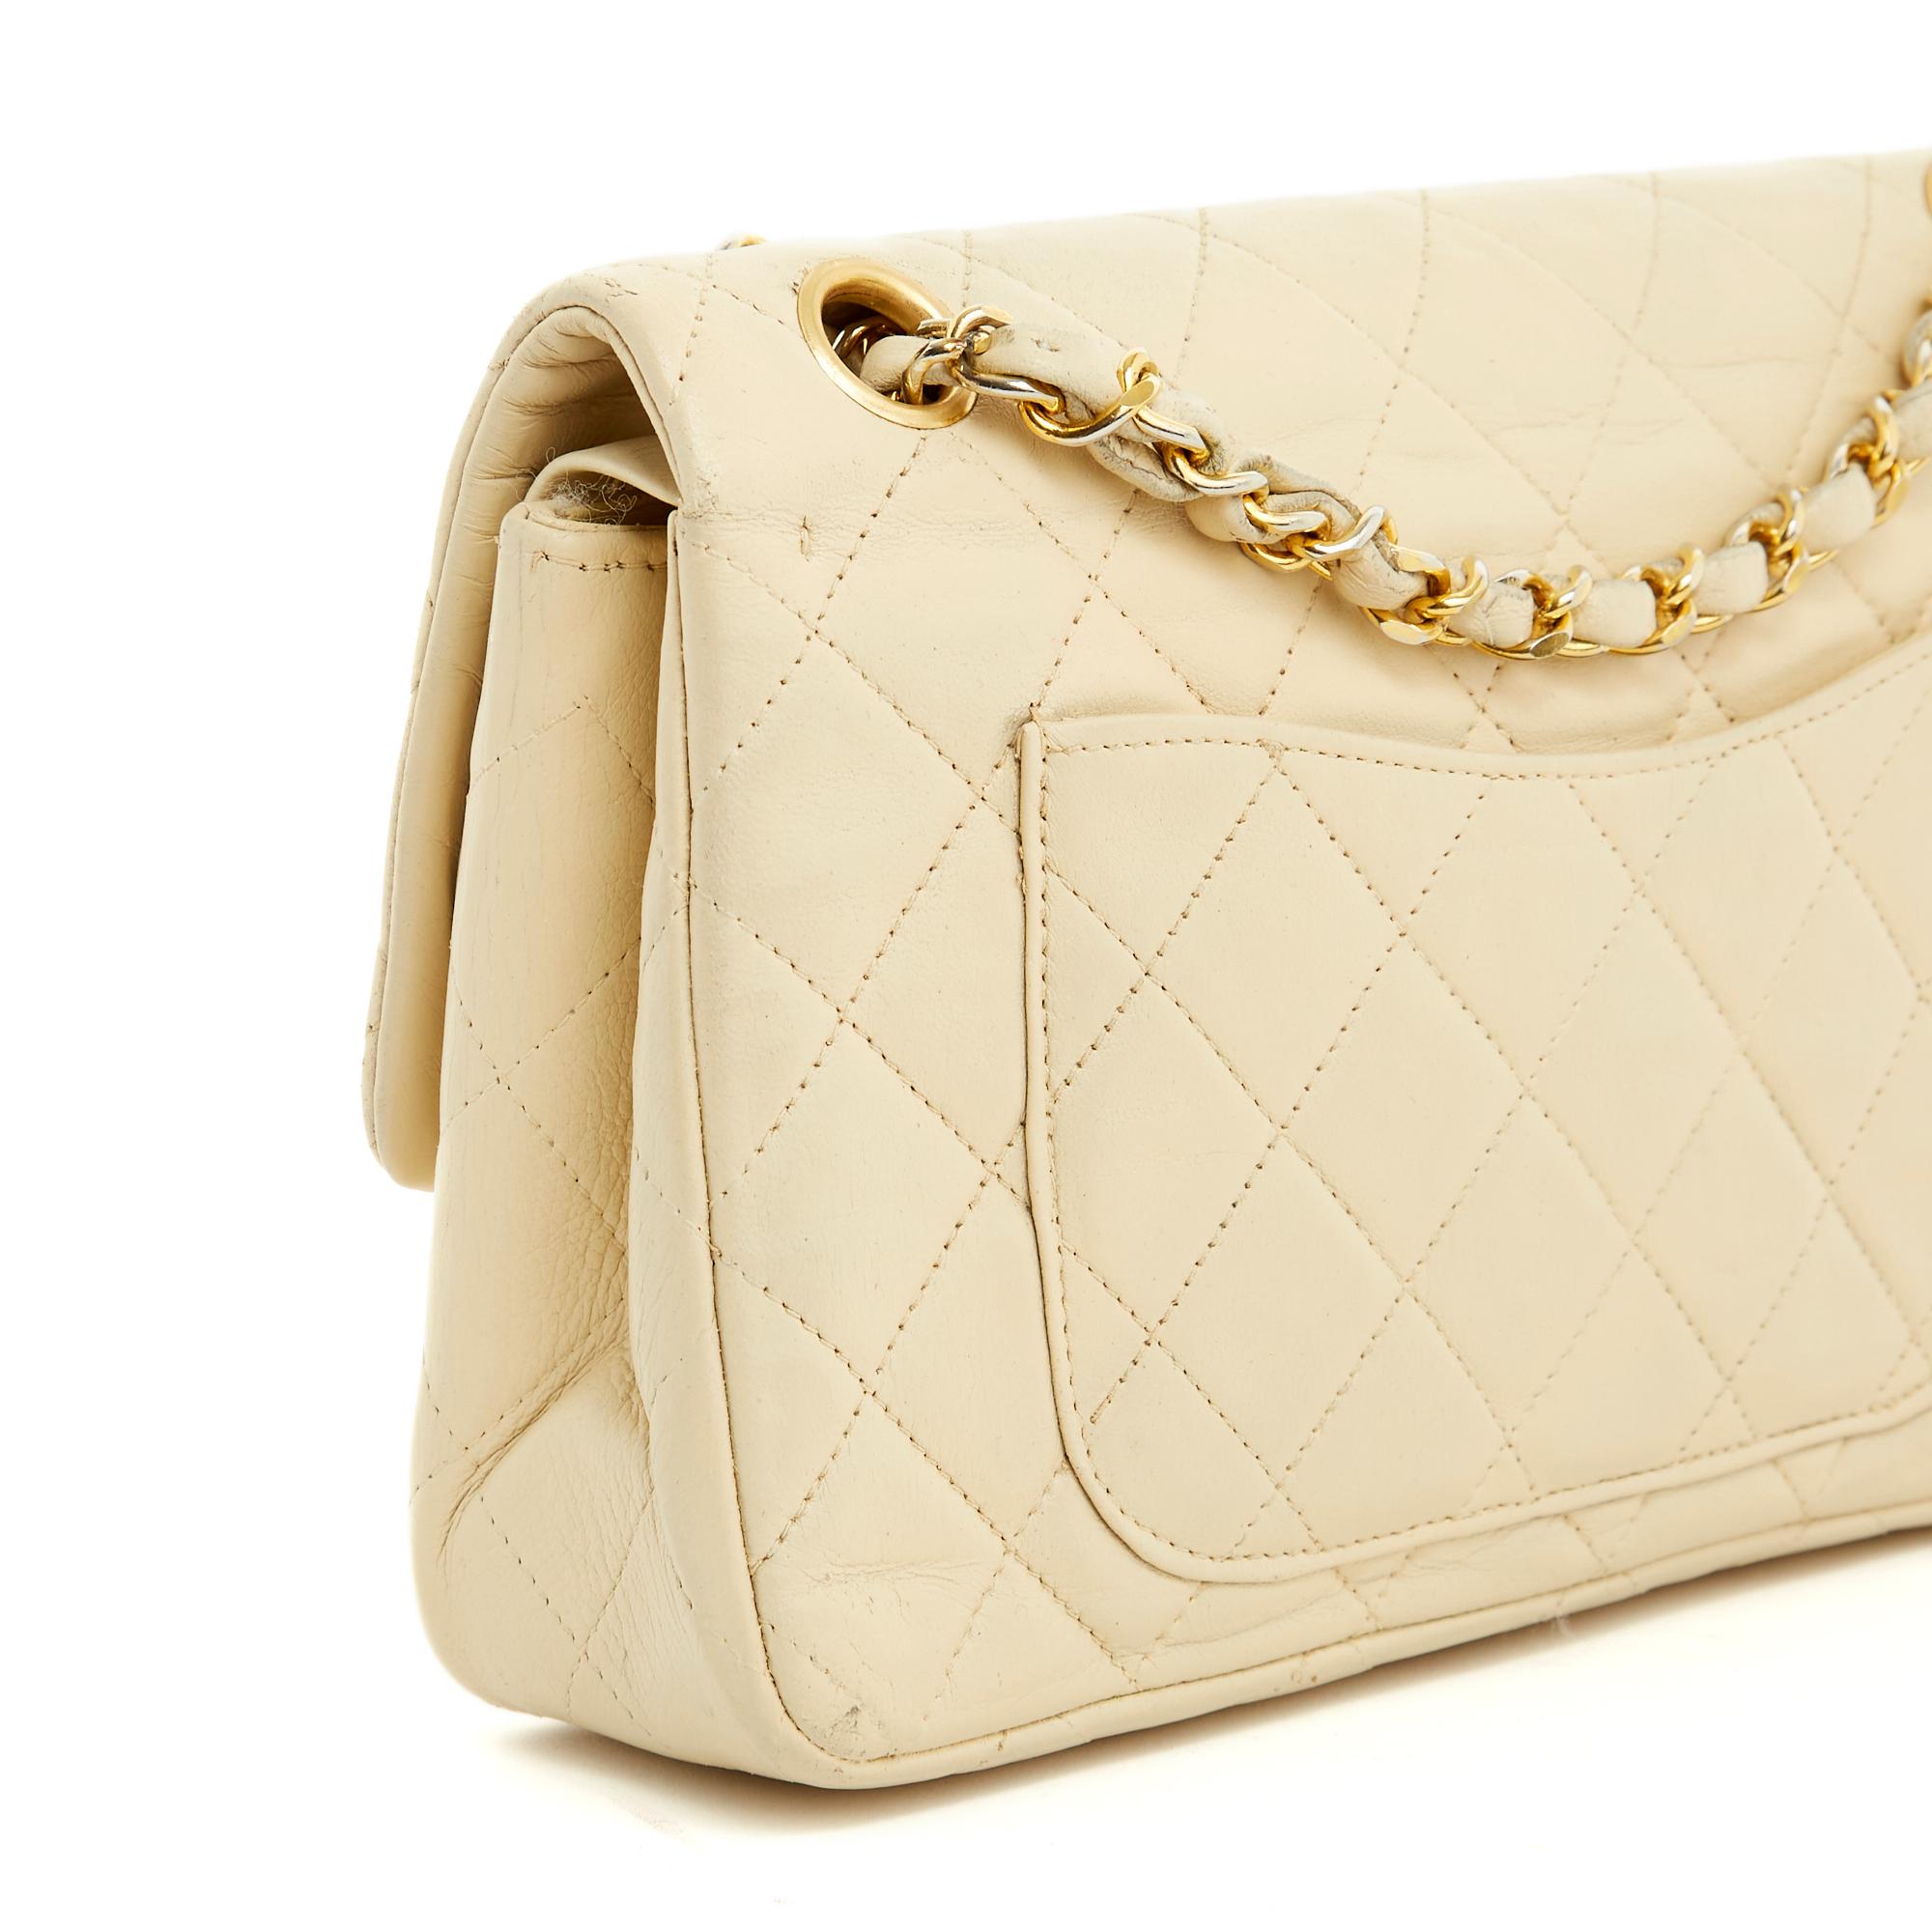 Chanel Sac Classique Timeless Bag double flap vanilla vintage 1